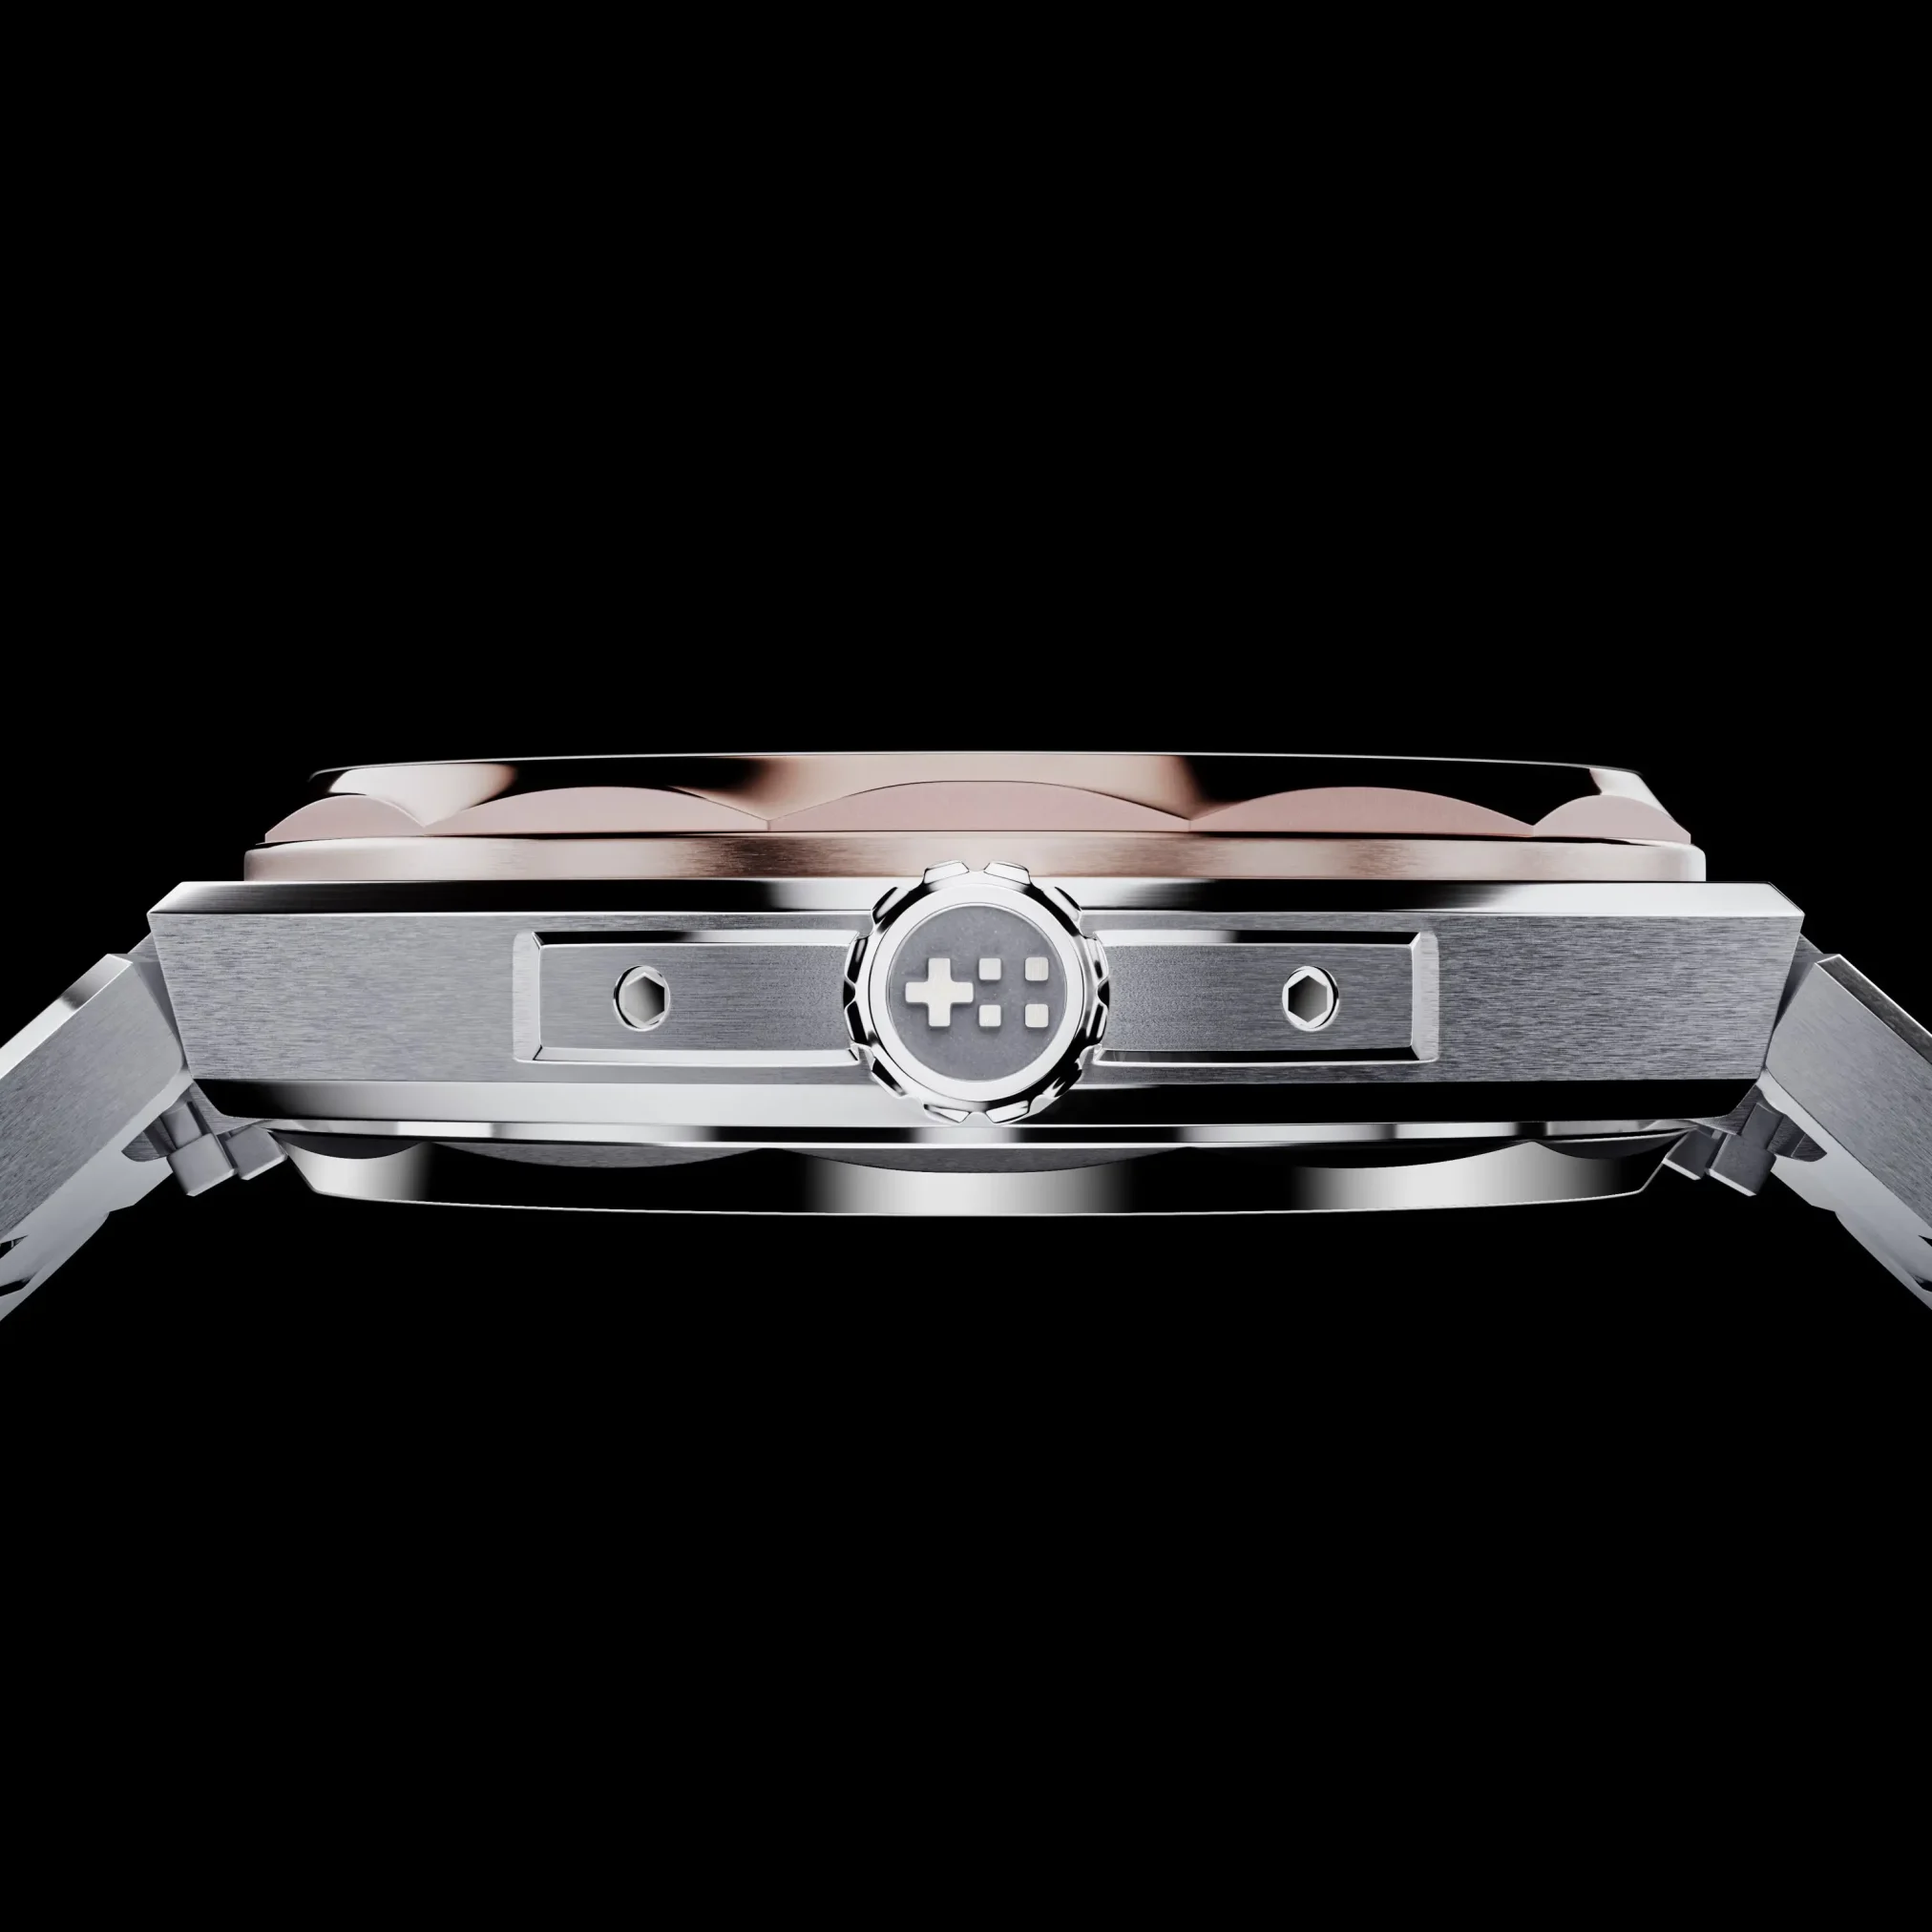 Đồng hồ Christopher Ward C12 The Twelve 36 Halo C12-36A2H1-S0AW0-B0 mặt số màu bạc. Thiết kế lộ cơ. Dây đeo bằng thép. Thân vỏ bằng thép.